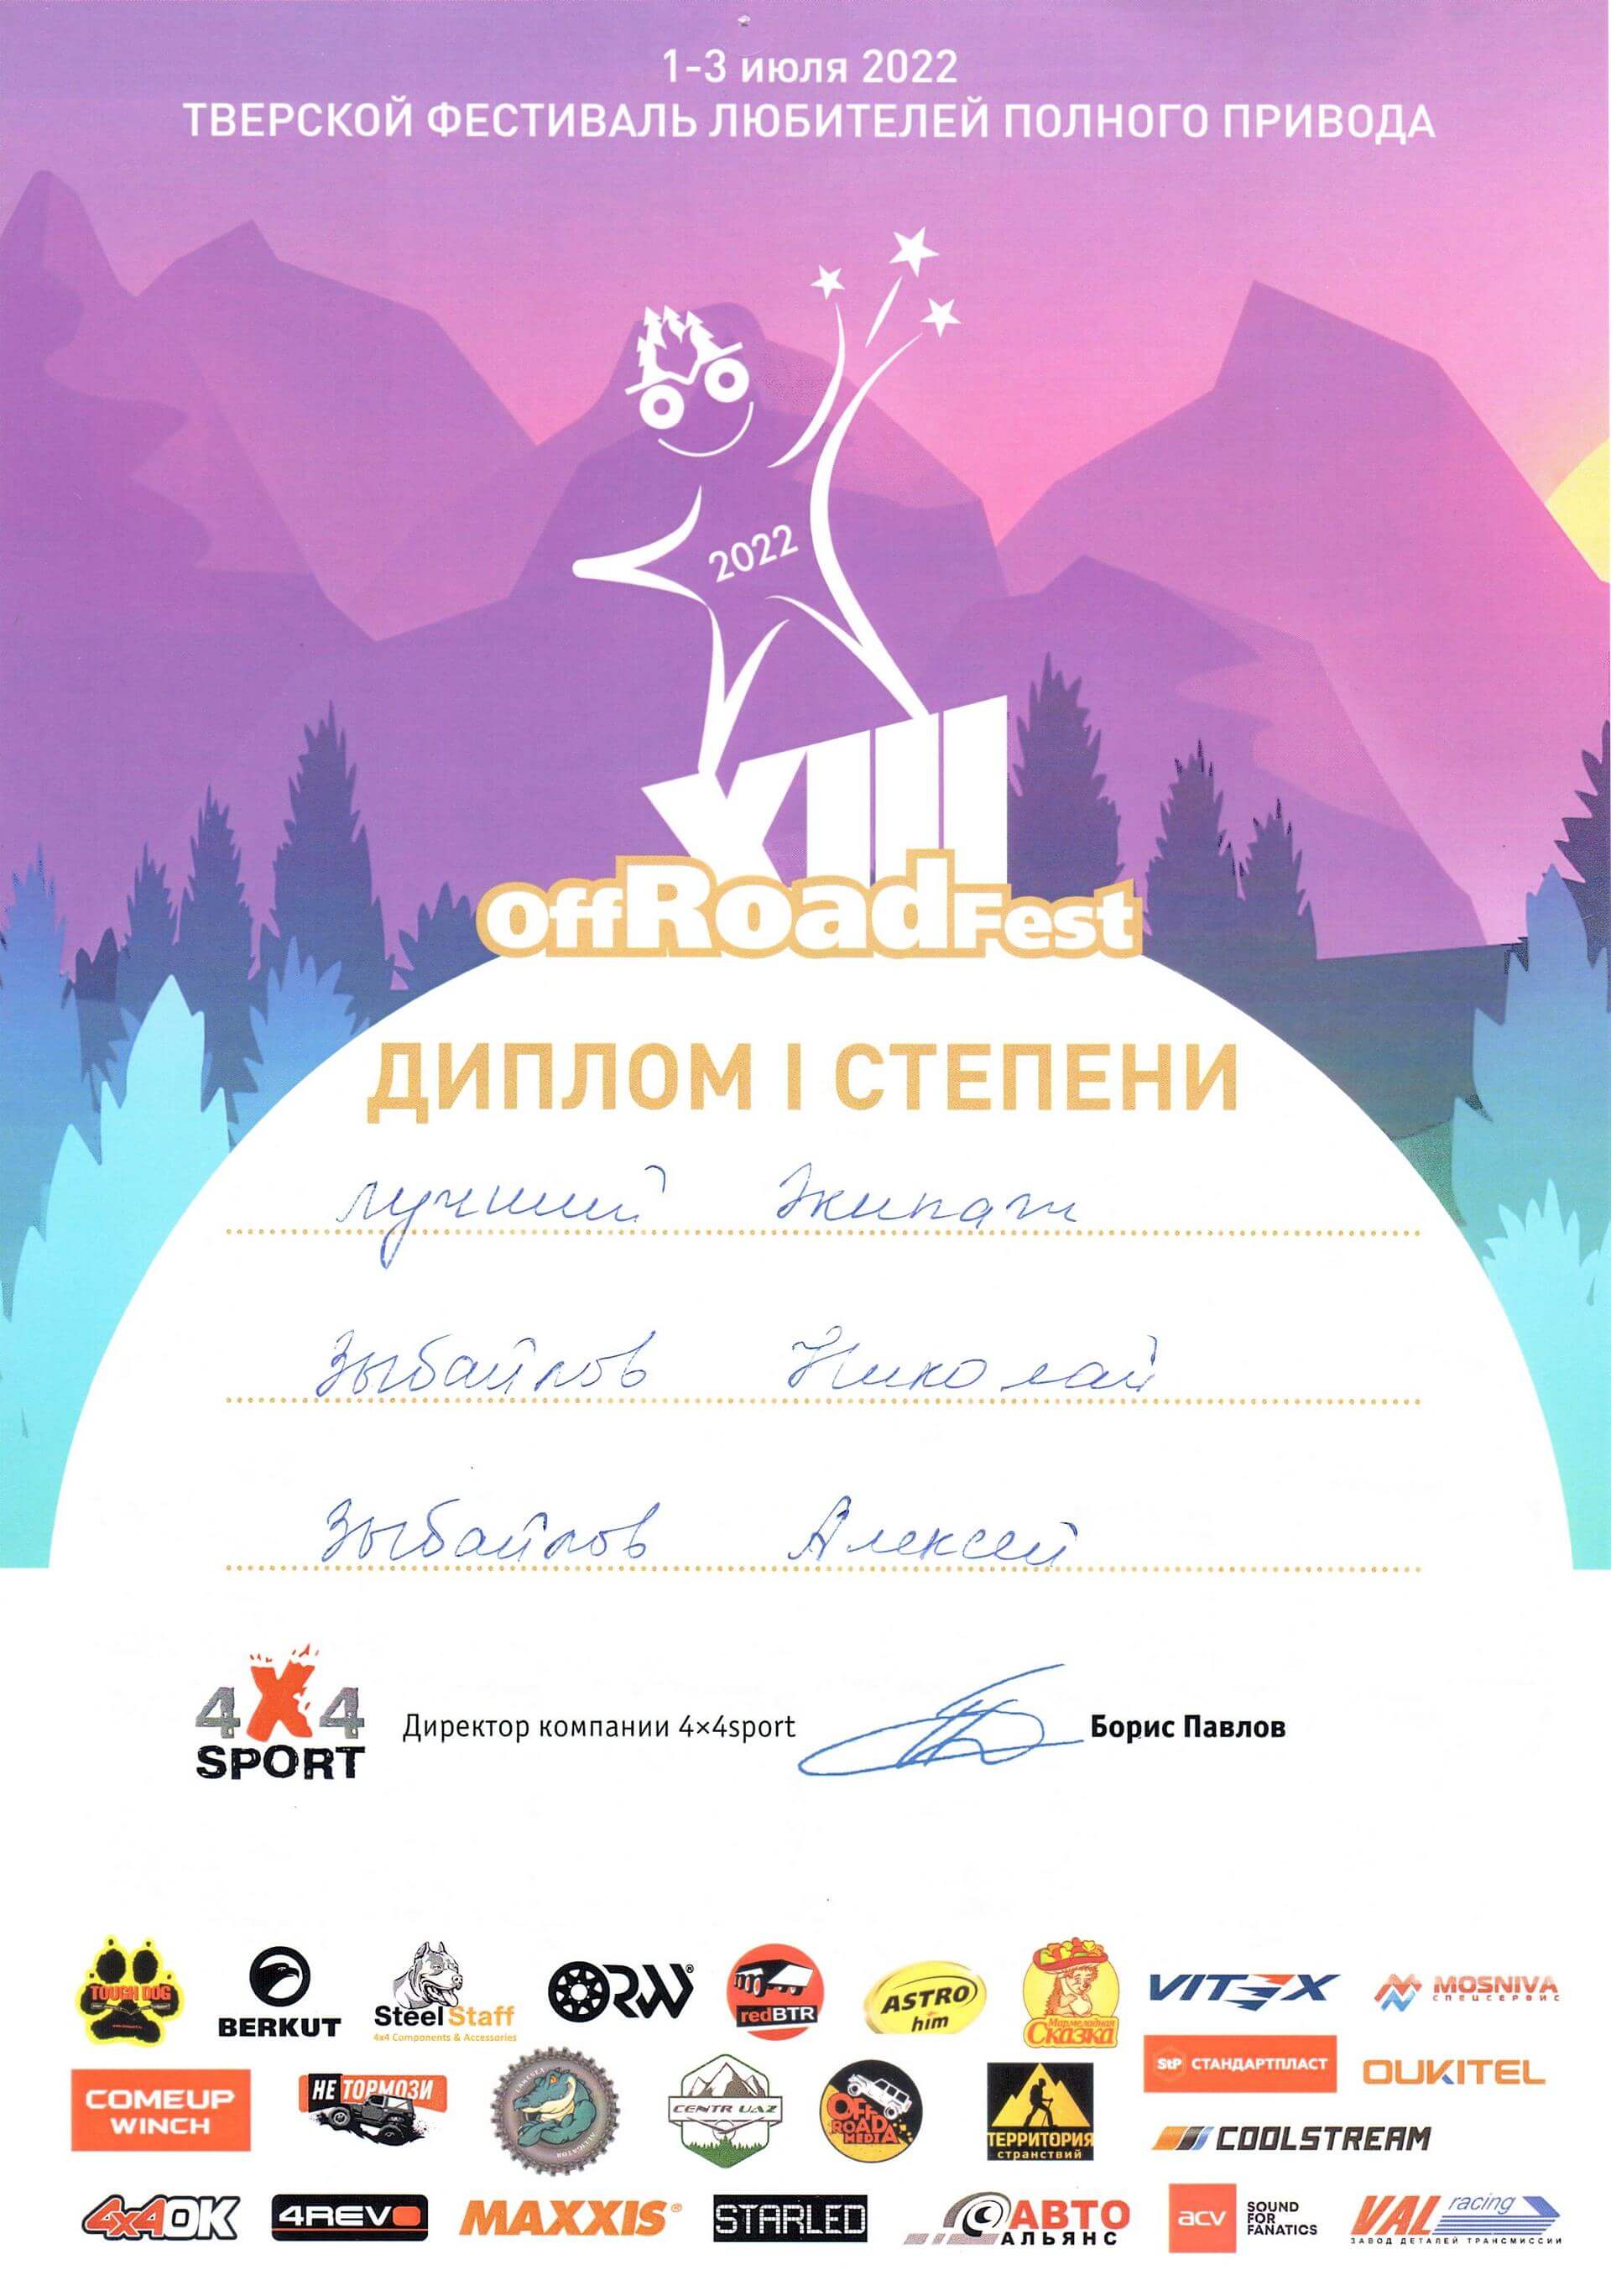 offRoadfest Диплом 1 степени Забайлов Николай, Забайлов Алексей